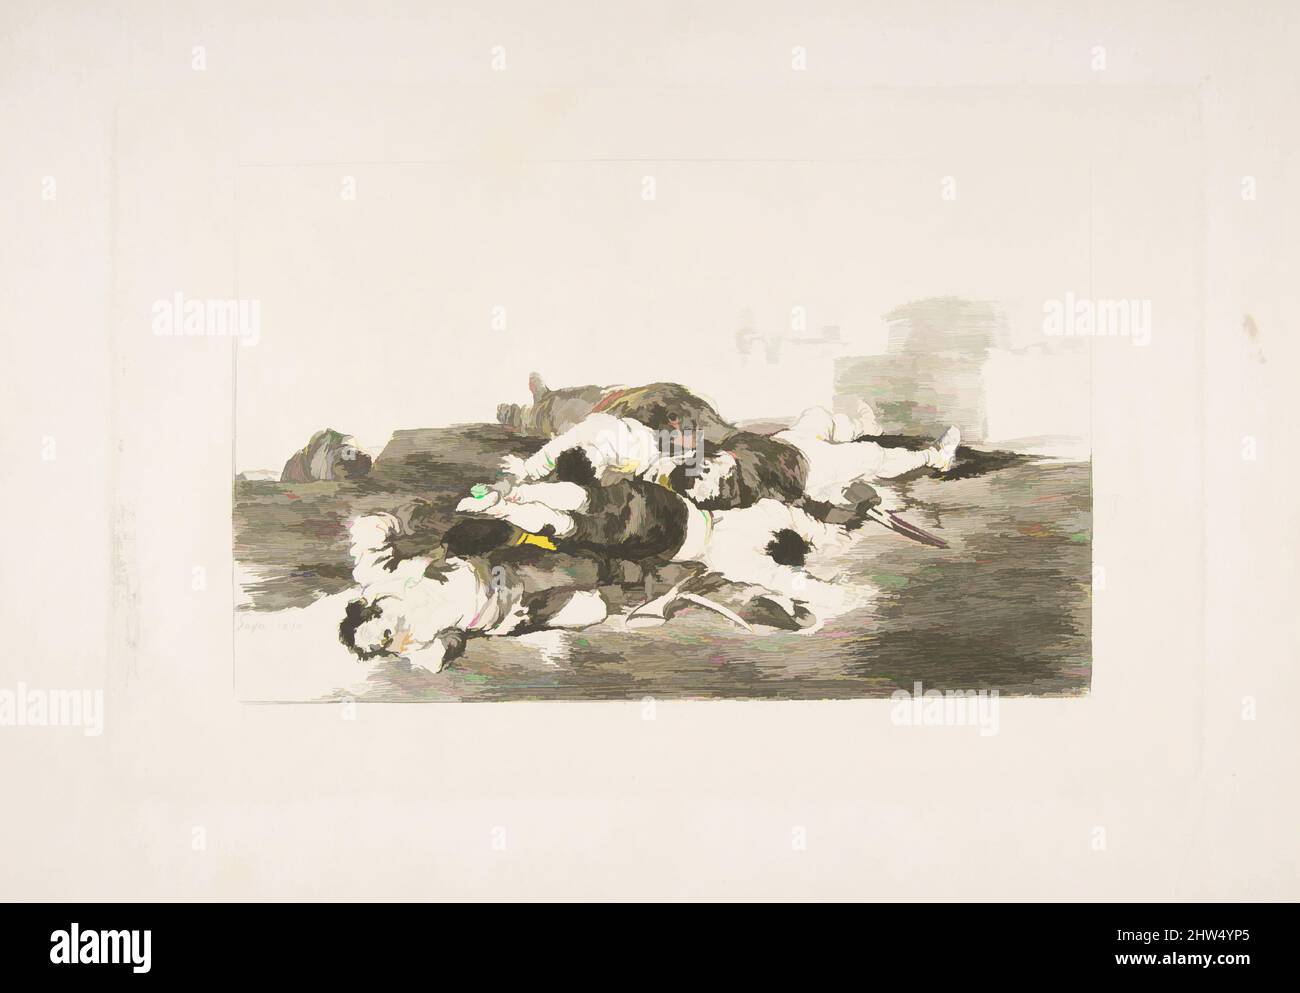 Art inspiré par la planche 22 de 'les désastres de la guerre' (Los Desastres de la Guerra): 'Encore pire.' (Tanto y mas), 1810, Décapage et burin, plaque : 6 5/16 × 9 15/16 po. (16 × 25,2 cm), Prints, Goya (Francisco de Goya y Lucientes) (Espagnol, Fuendetodos 1746–1828 Bordeaux, oeuvres classiques modernisées par Artotop avec une touche de modernité. Formes, couleur et valeur, impact visuel accrocheur sur l'art émotions par la liberté d'œuvres d'art d'une manière contemporaine. Un message intemporel qui cherche une nouvelle direction créative. Artistes qui se tournent vers le support numérique et créent le NFT Artotop Banque D'Images